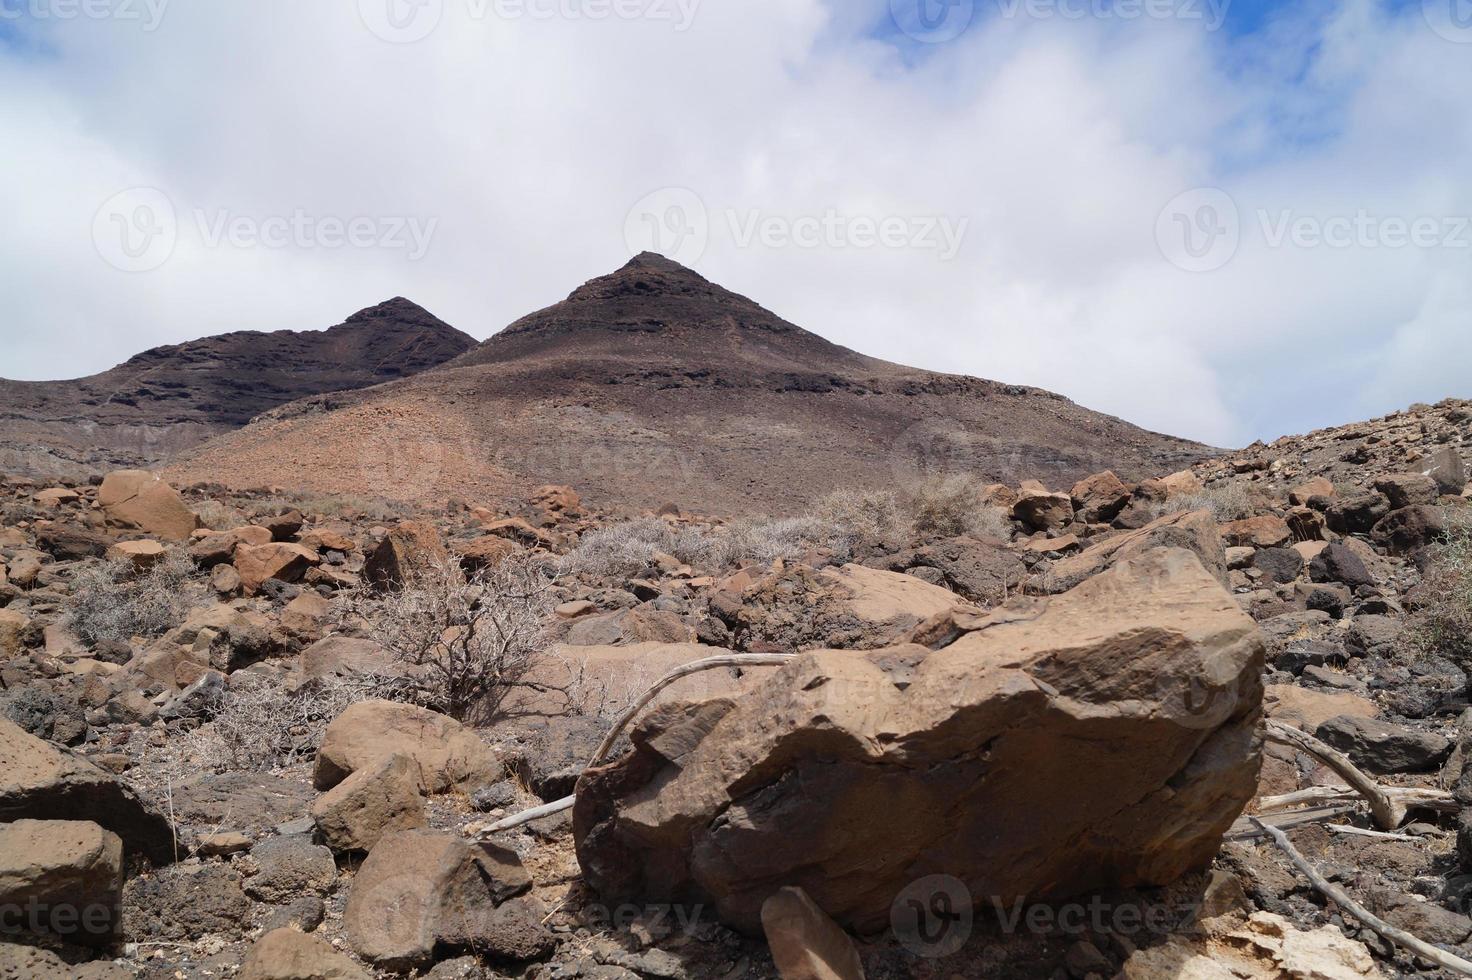 montanhas vulcânicas de fuerteventura - espanha foto